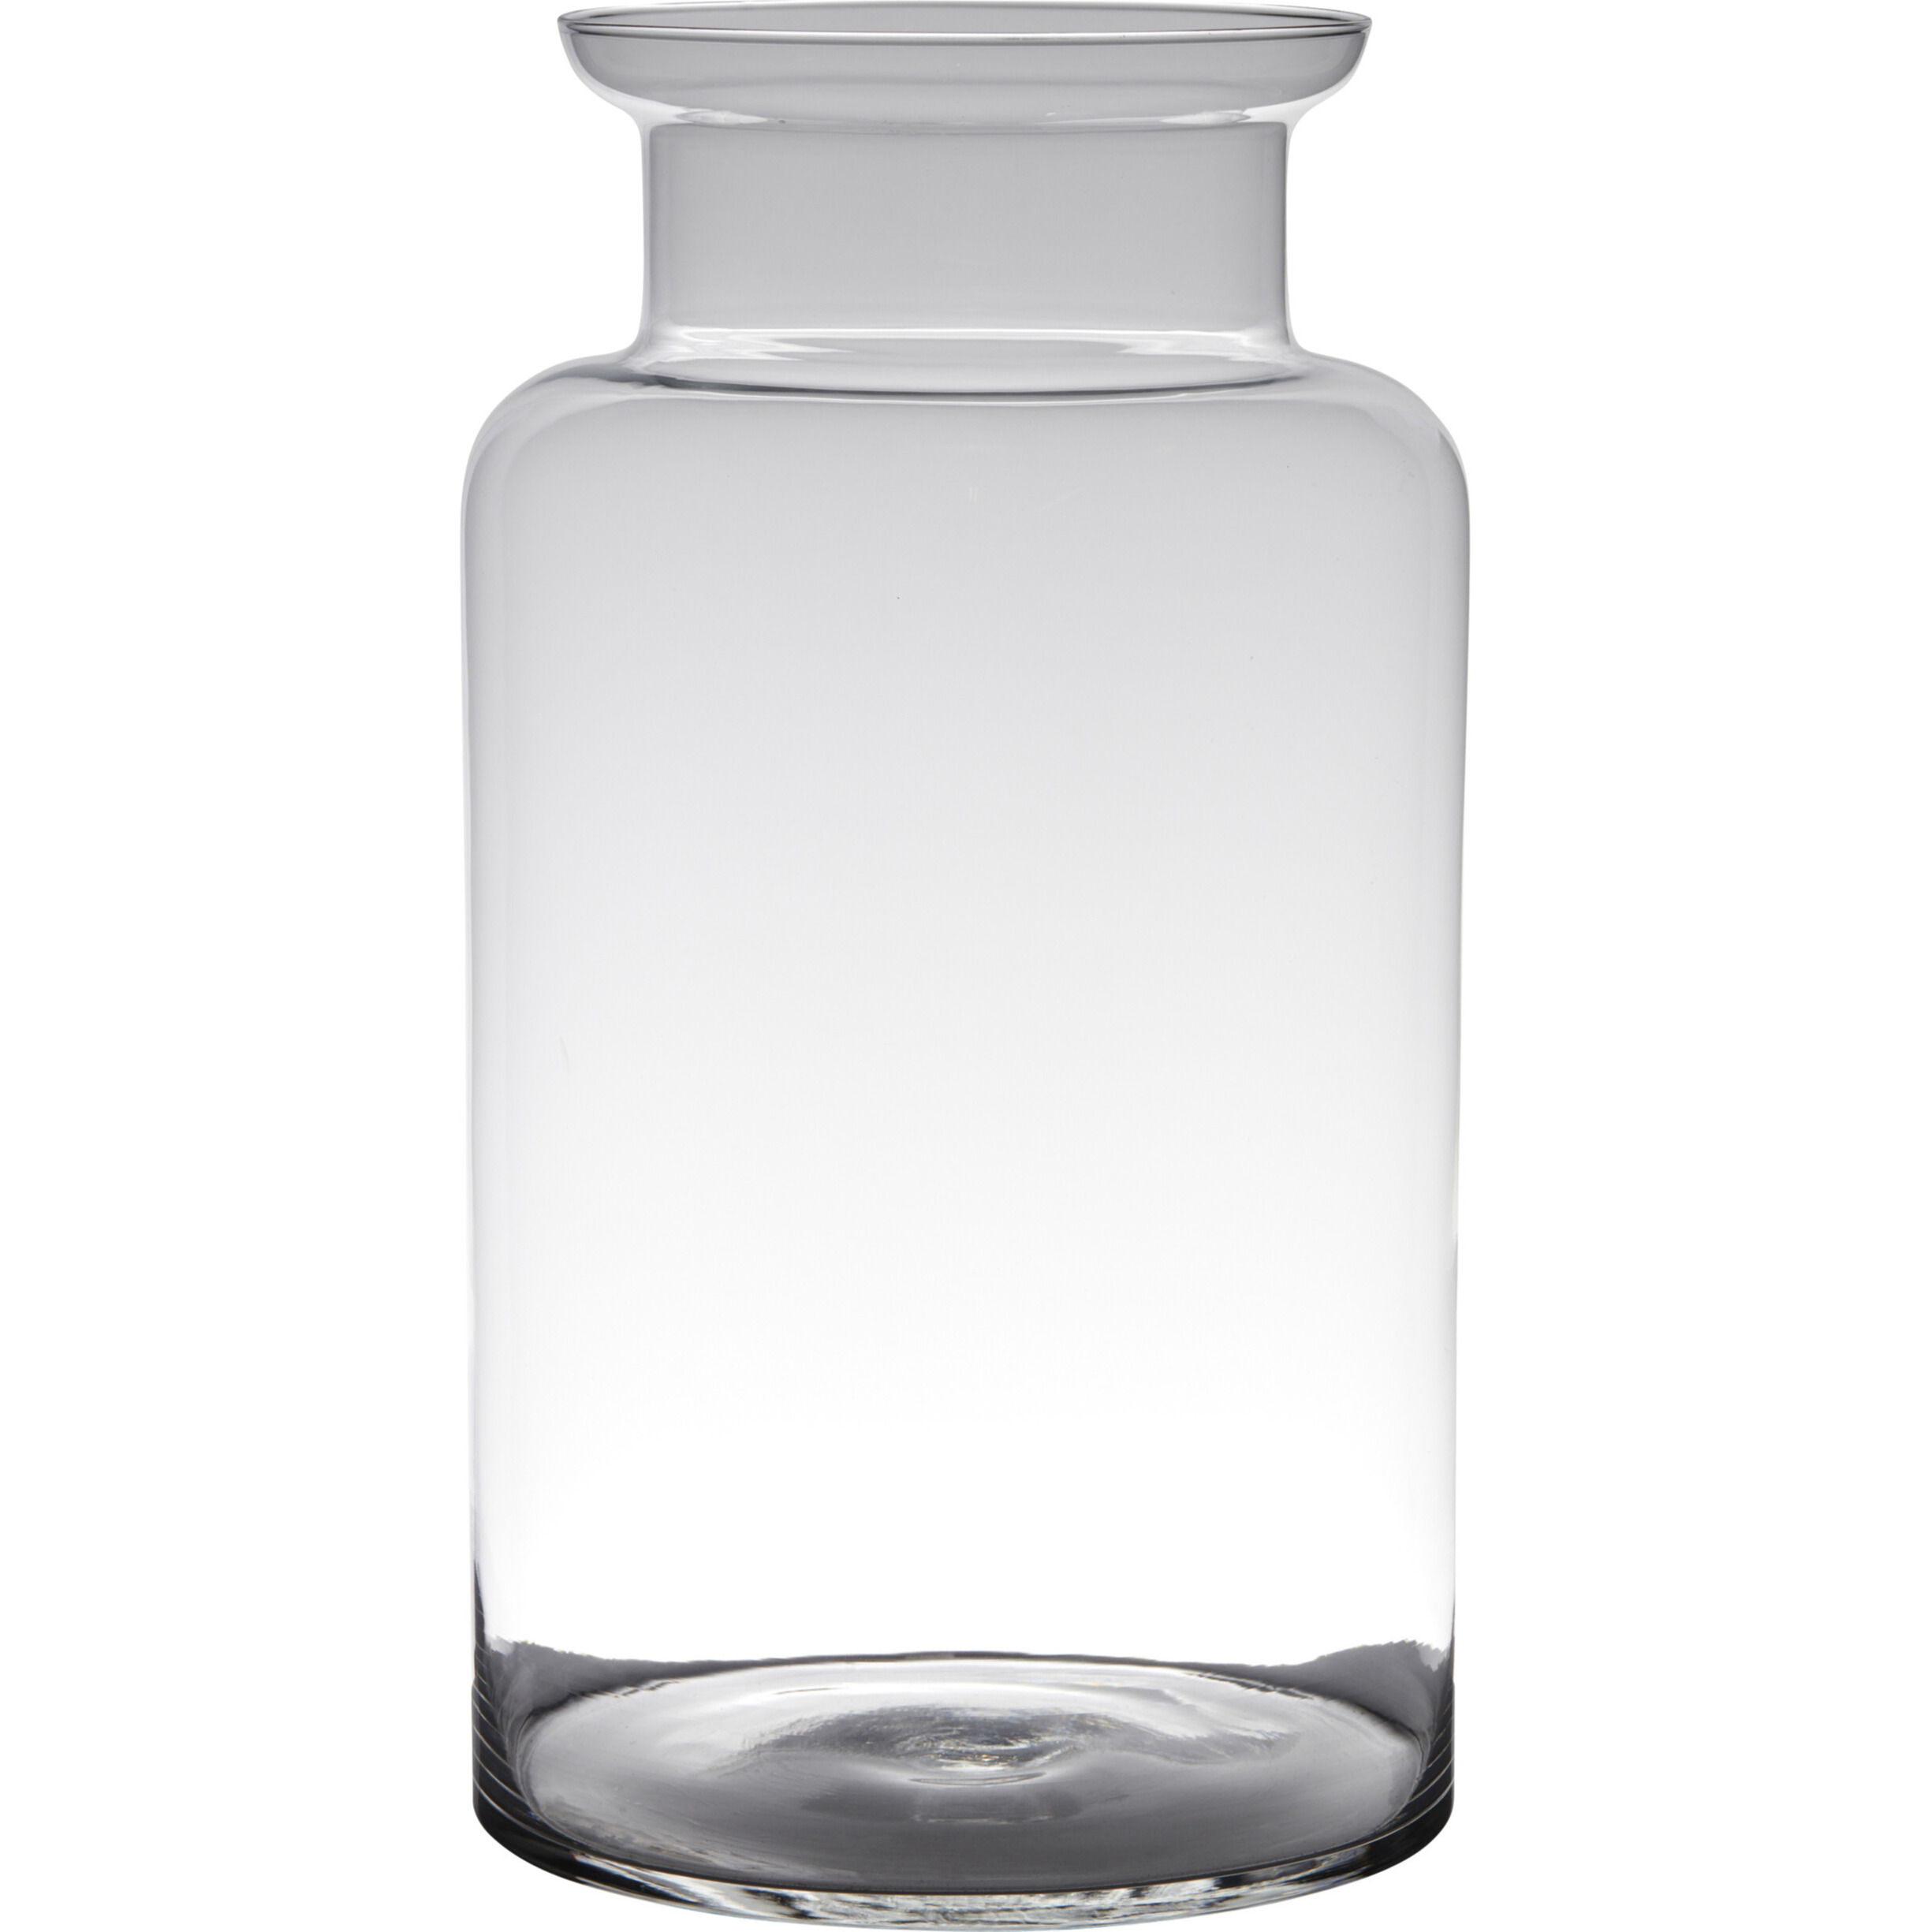 Hakbijl Glass Transparante luxe grote melkbus vaas/vazen van glas 55 x 21 cm -